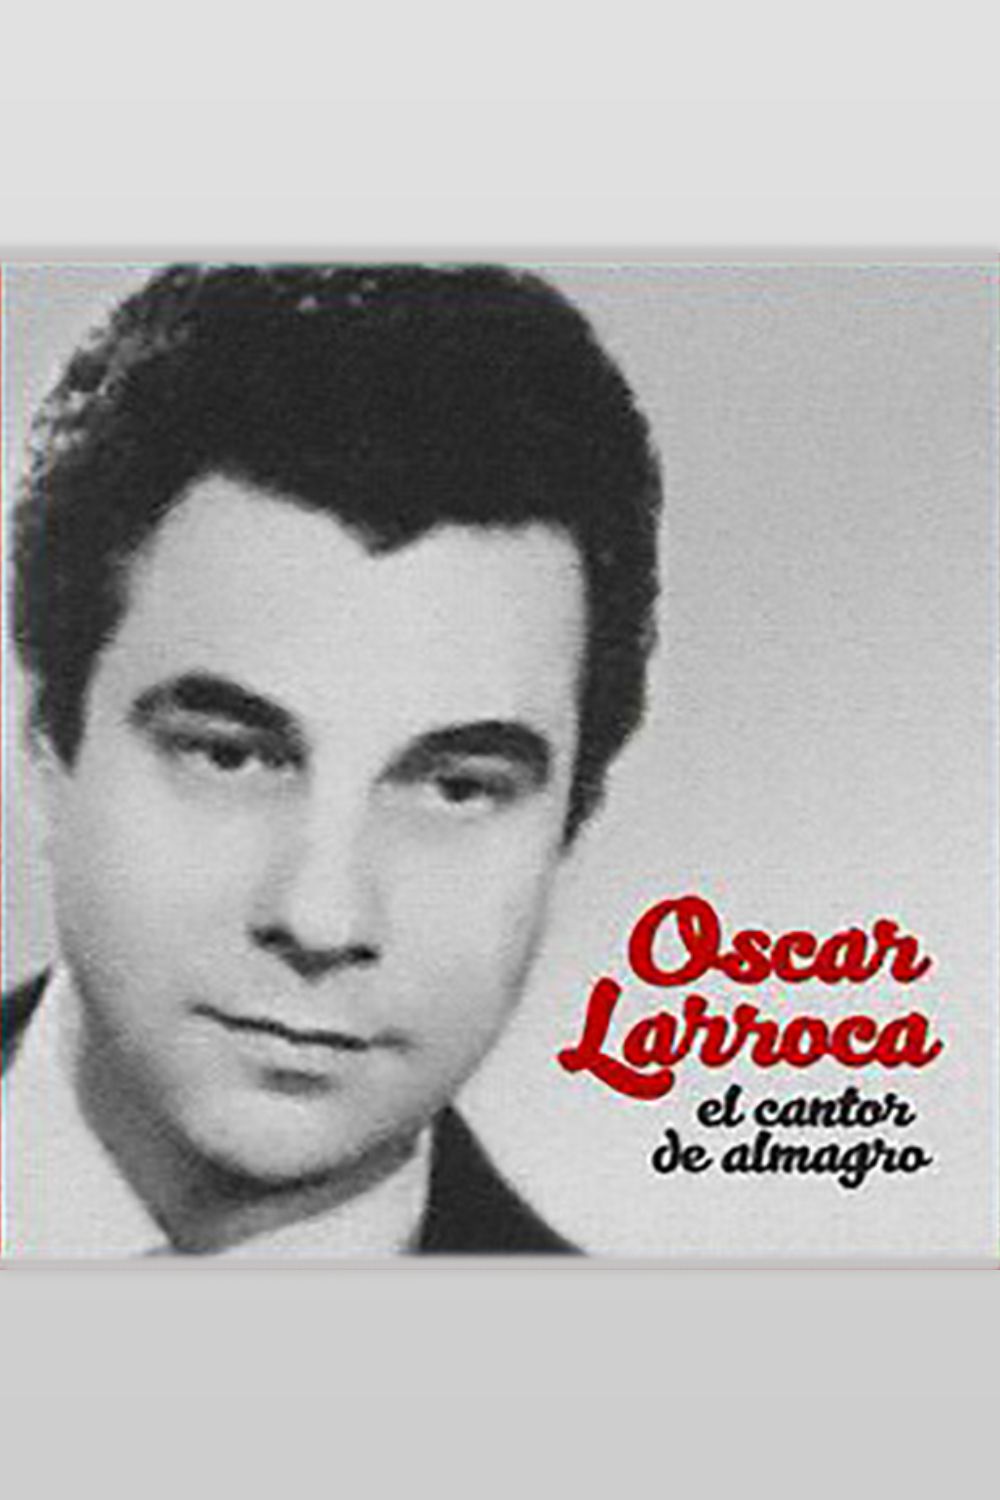 Oscar Larroca, cantor de nuestro Tango.